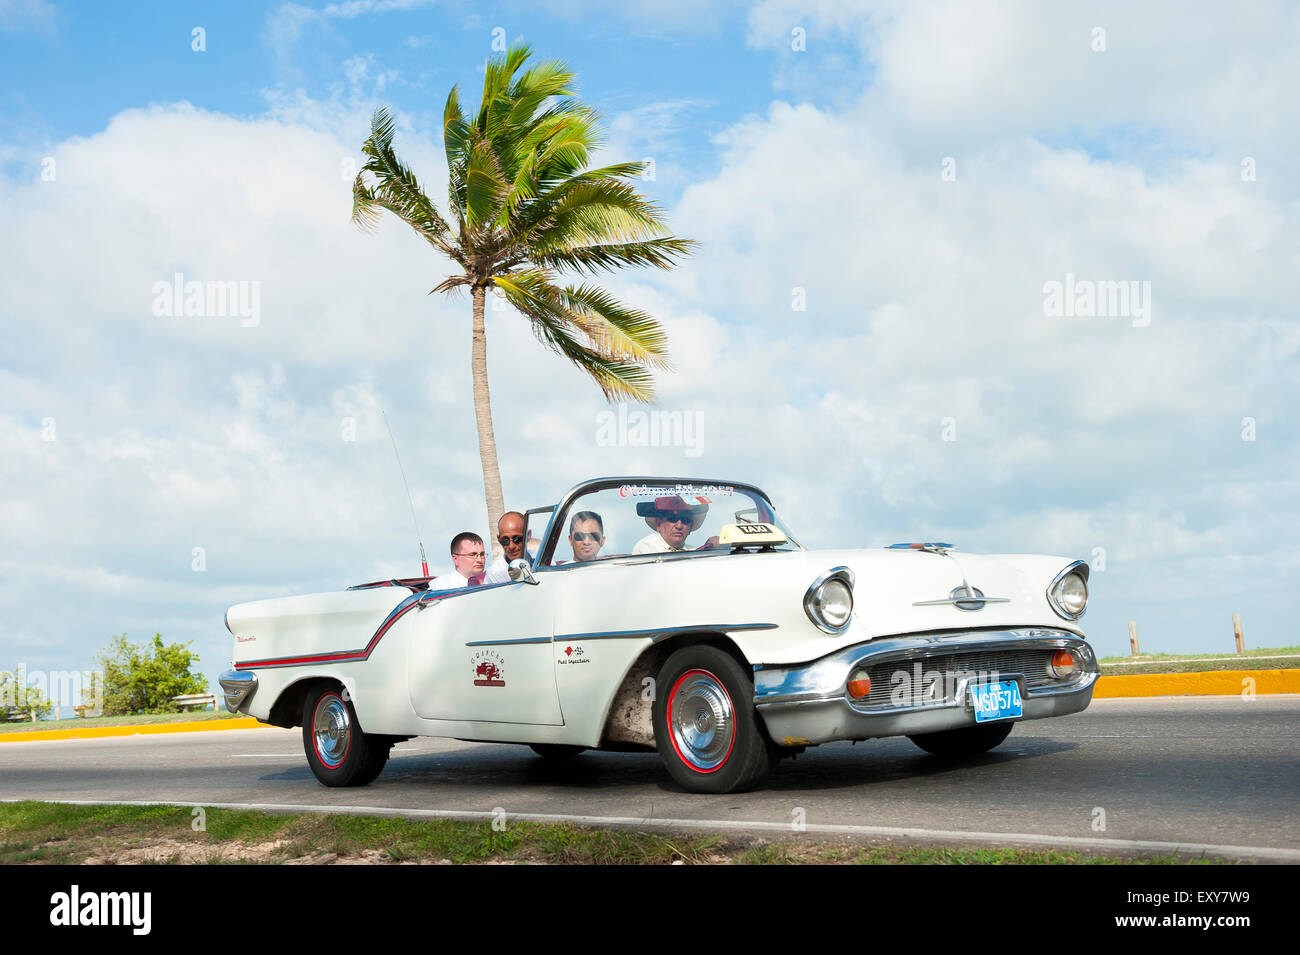 VARADERO, CUBA - 07 juin 2011 : les touristes ride en blanc Classic vintage American car la conduite sur une route côtière avec palmier. Banque D'Images